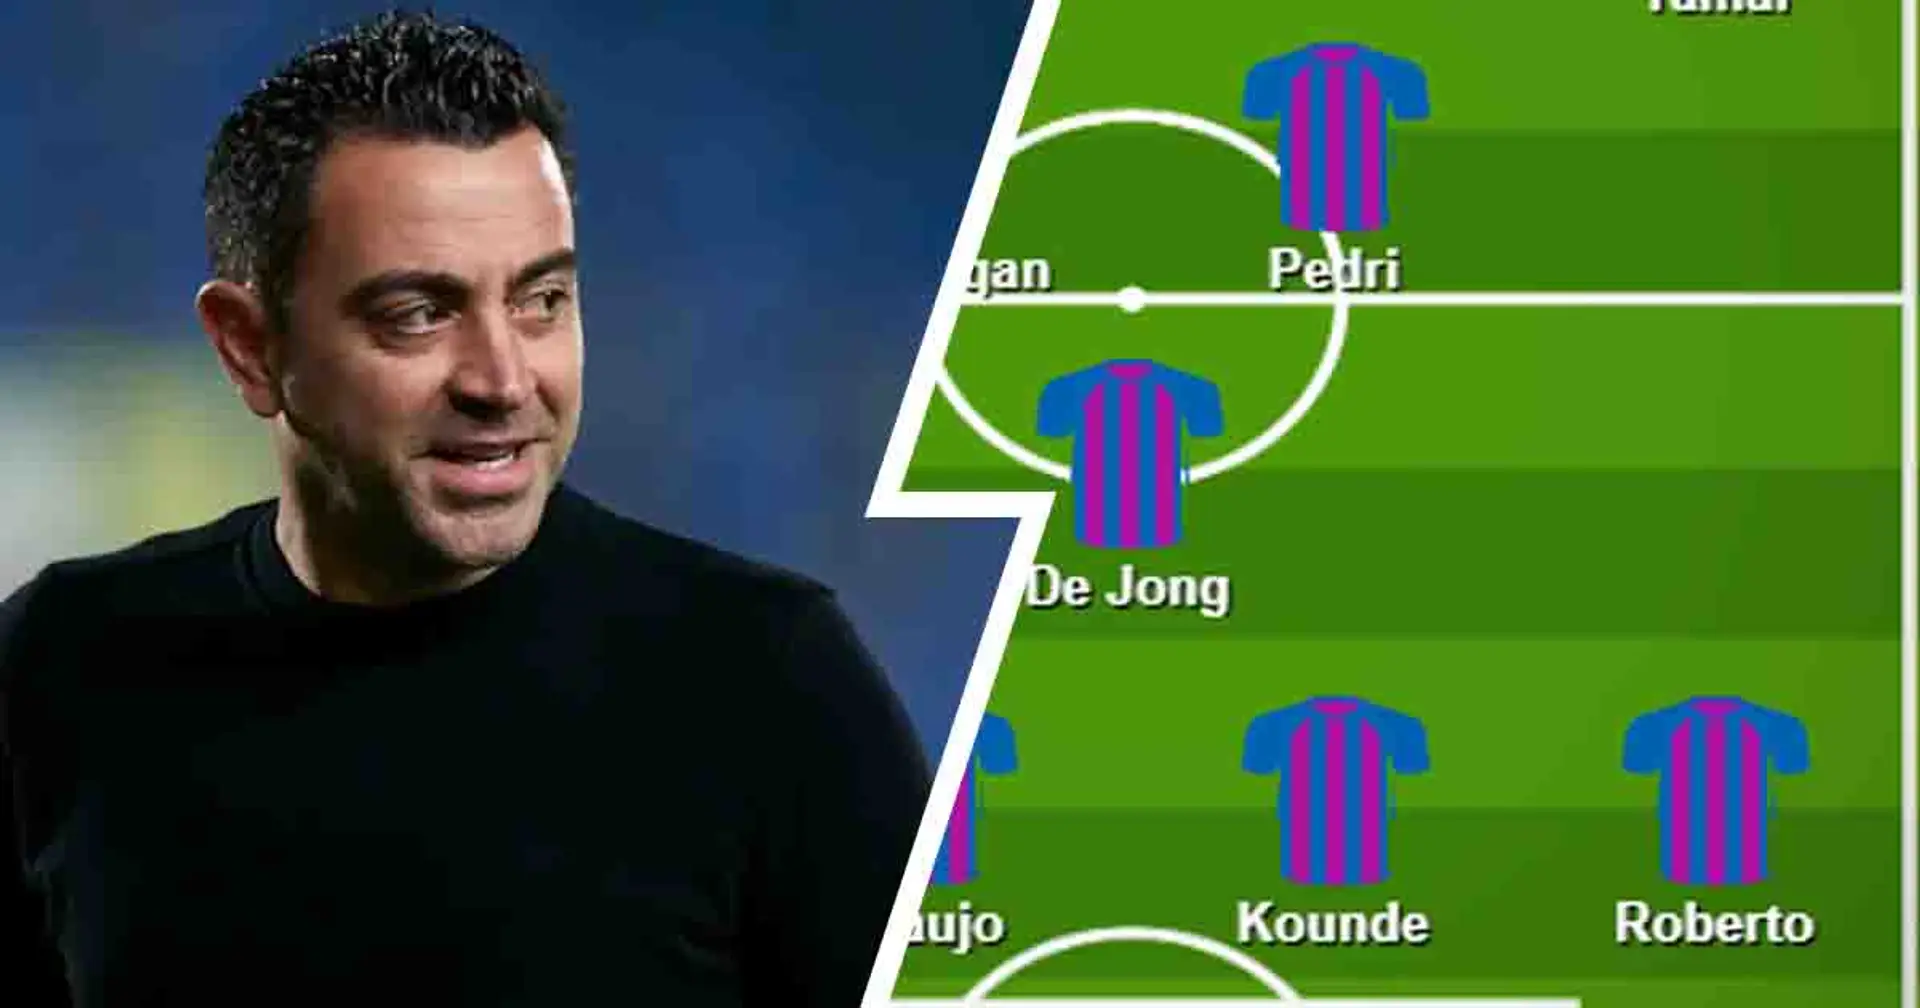 "Araujo et Kounde vont bien": les fans du Barça nomment le XI idéal pour le choc contre le Real Betis